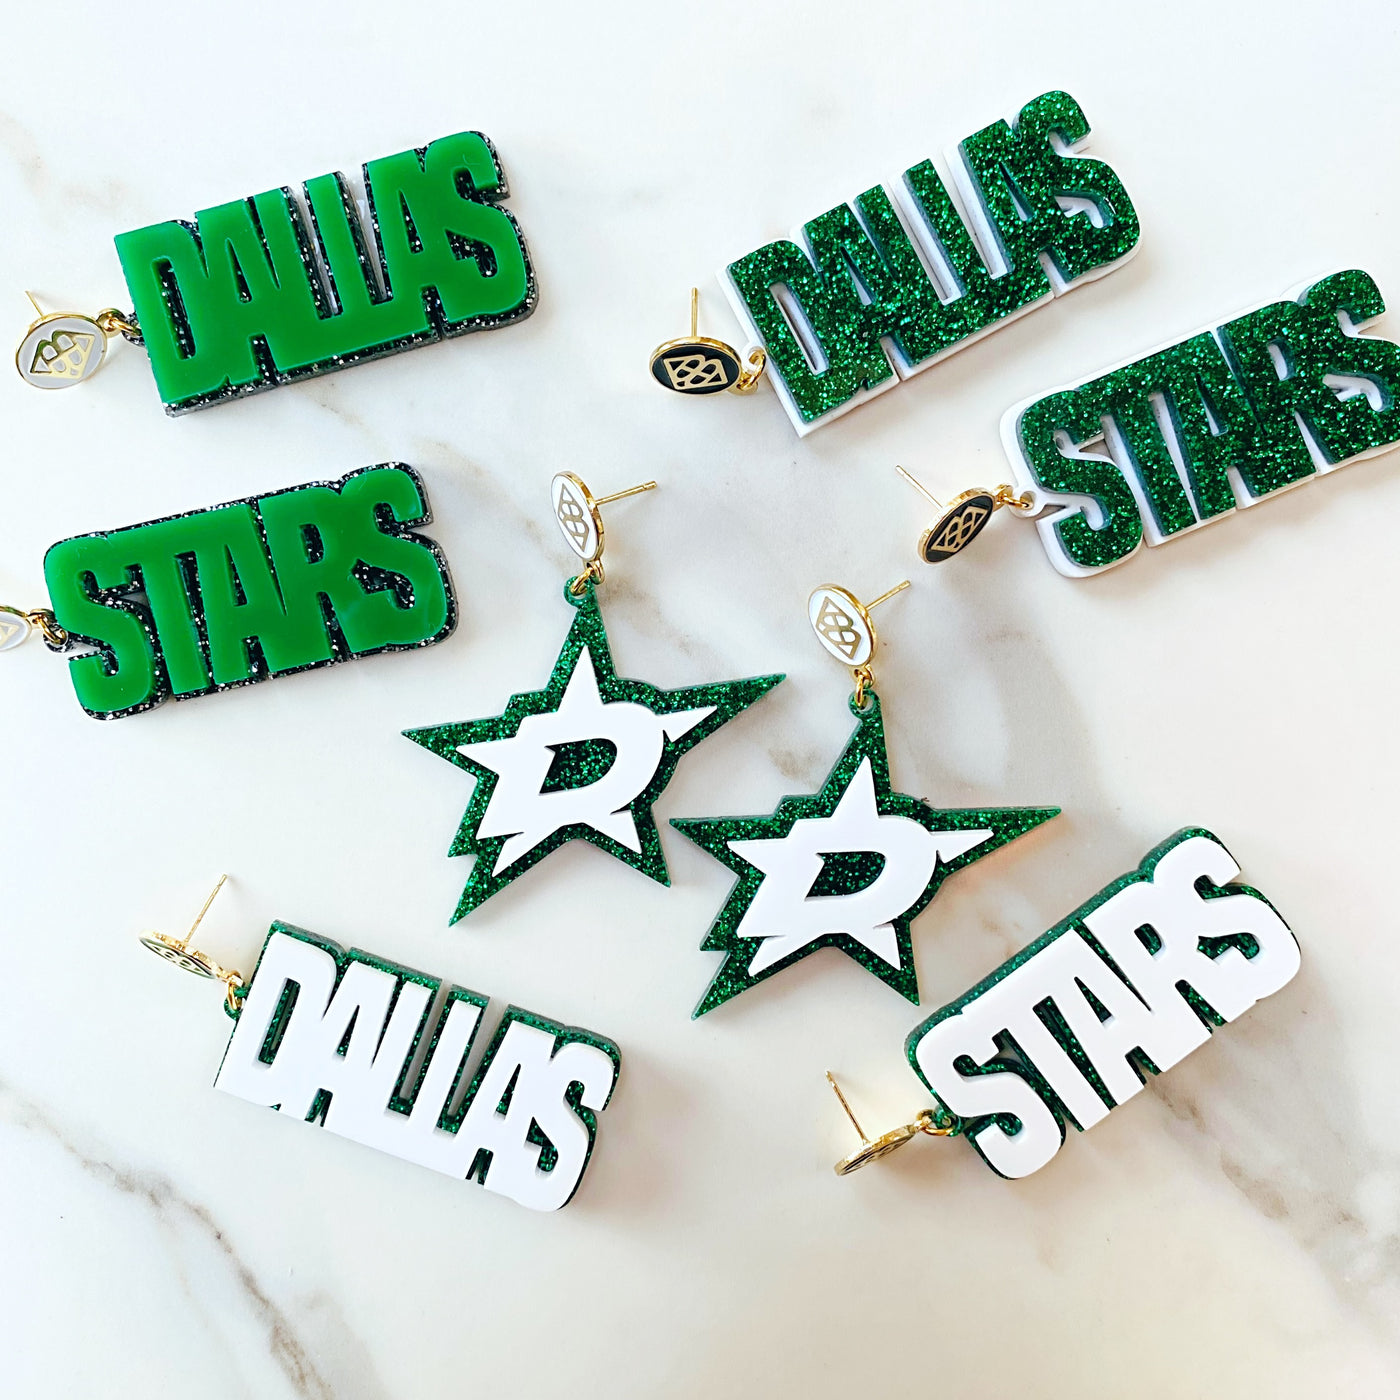 Dallas Stars - Green Glitter DALLAS STARS over White with Black Logo Top